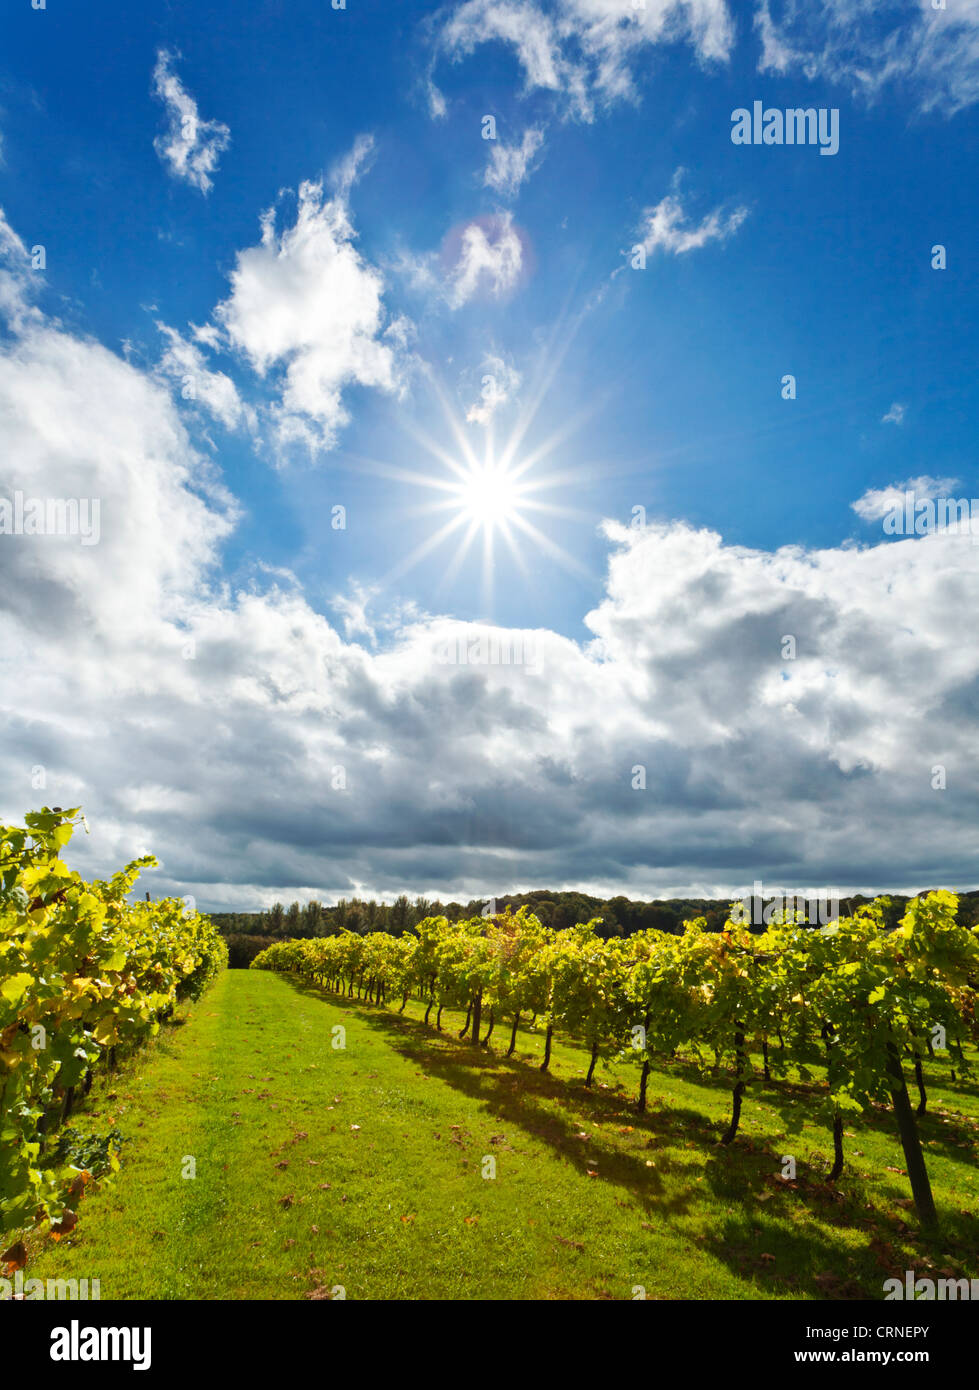 Rows of vines in Biddenden vineyard. Stock Photo